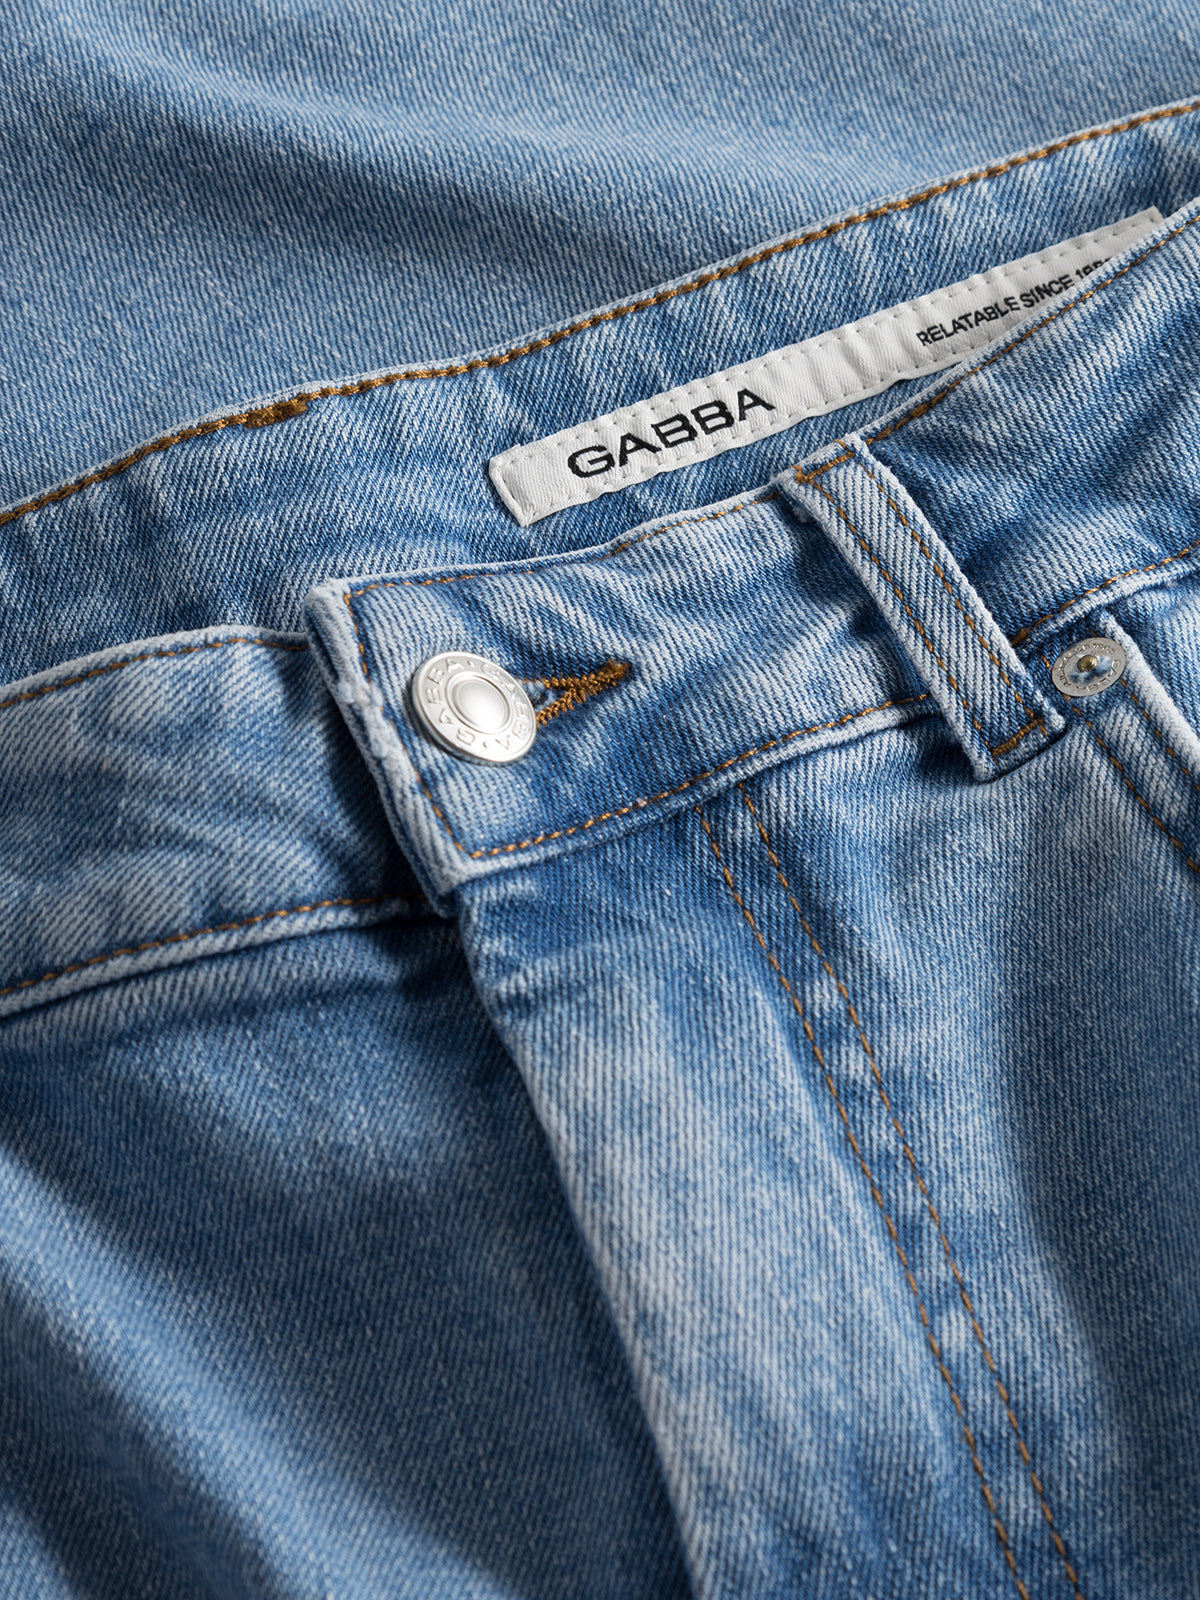 Marc jeans F1012 lt blue denim - Gabba